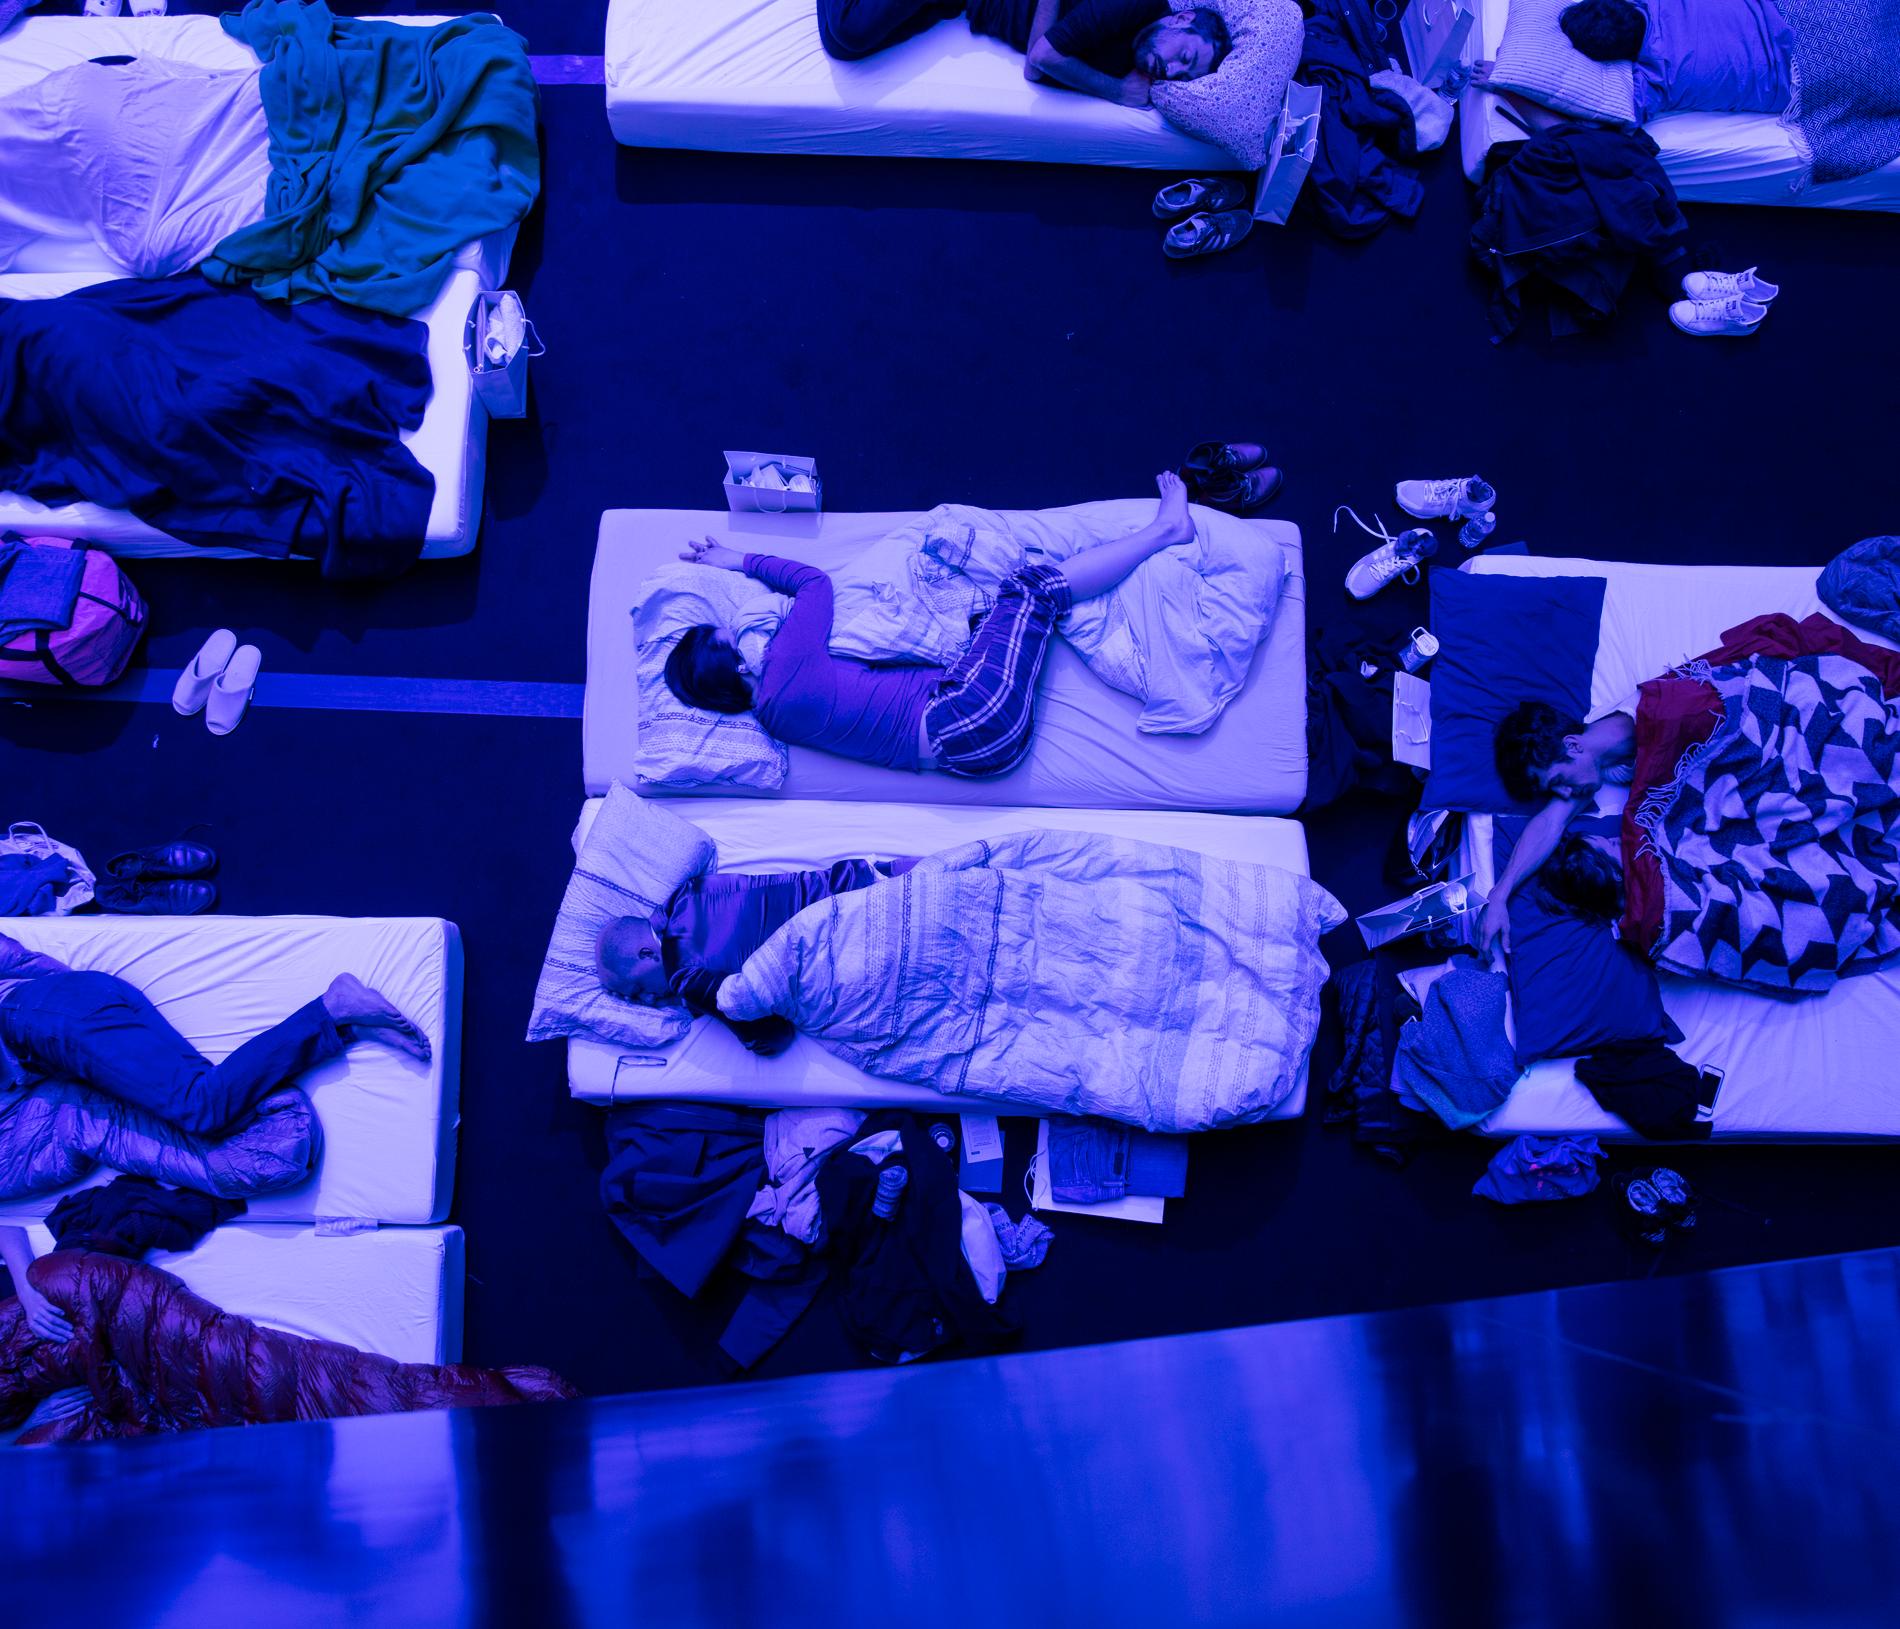 Porträttserie, 2-a pris: På Philharmonie de Paris i Paris, sover sig hundratals människor sig igenom en 8 timmar lång konsert av kompositören Max Richter. Richter har skapat ett verk han kallar SLEEP, ett minimalistiskt och vetenskapligt verk som guidar lyssnarna genom en hel natt.